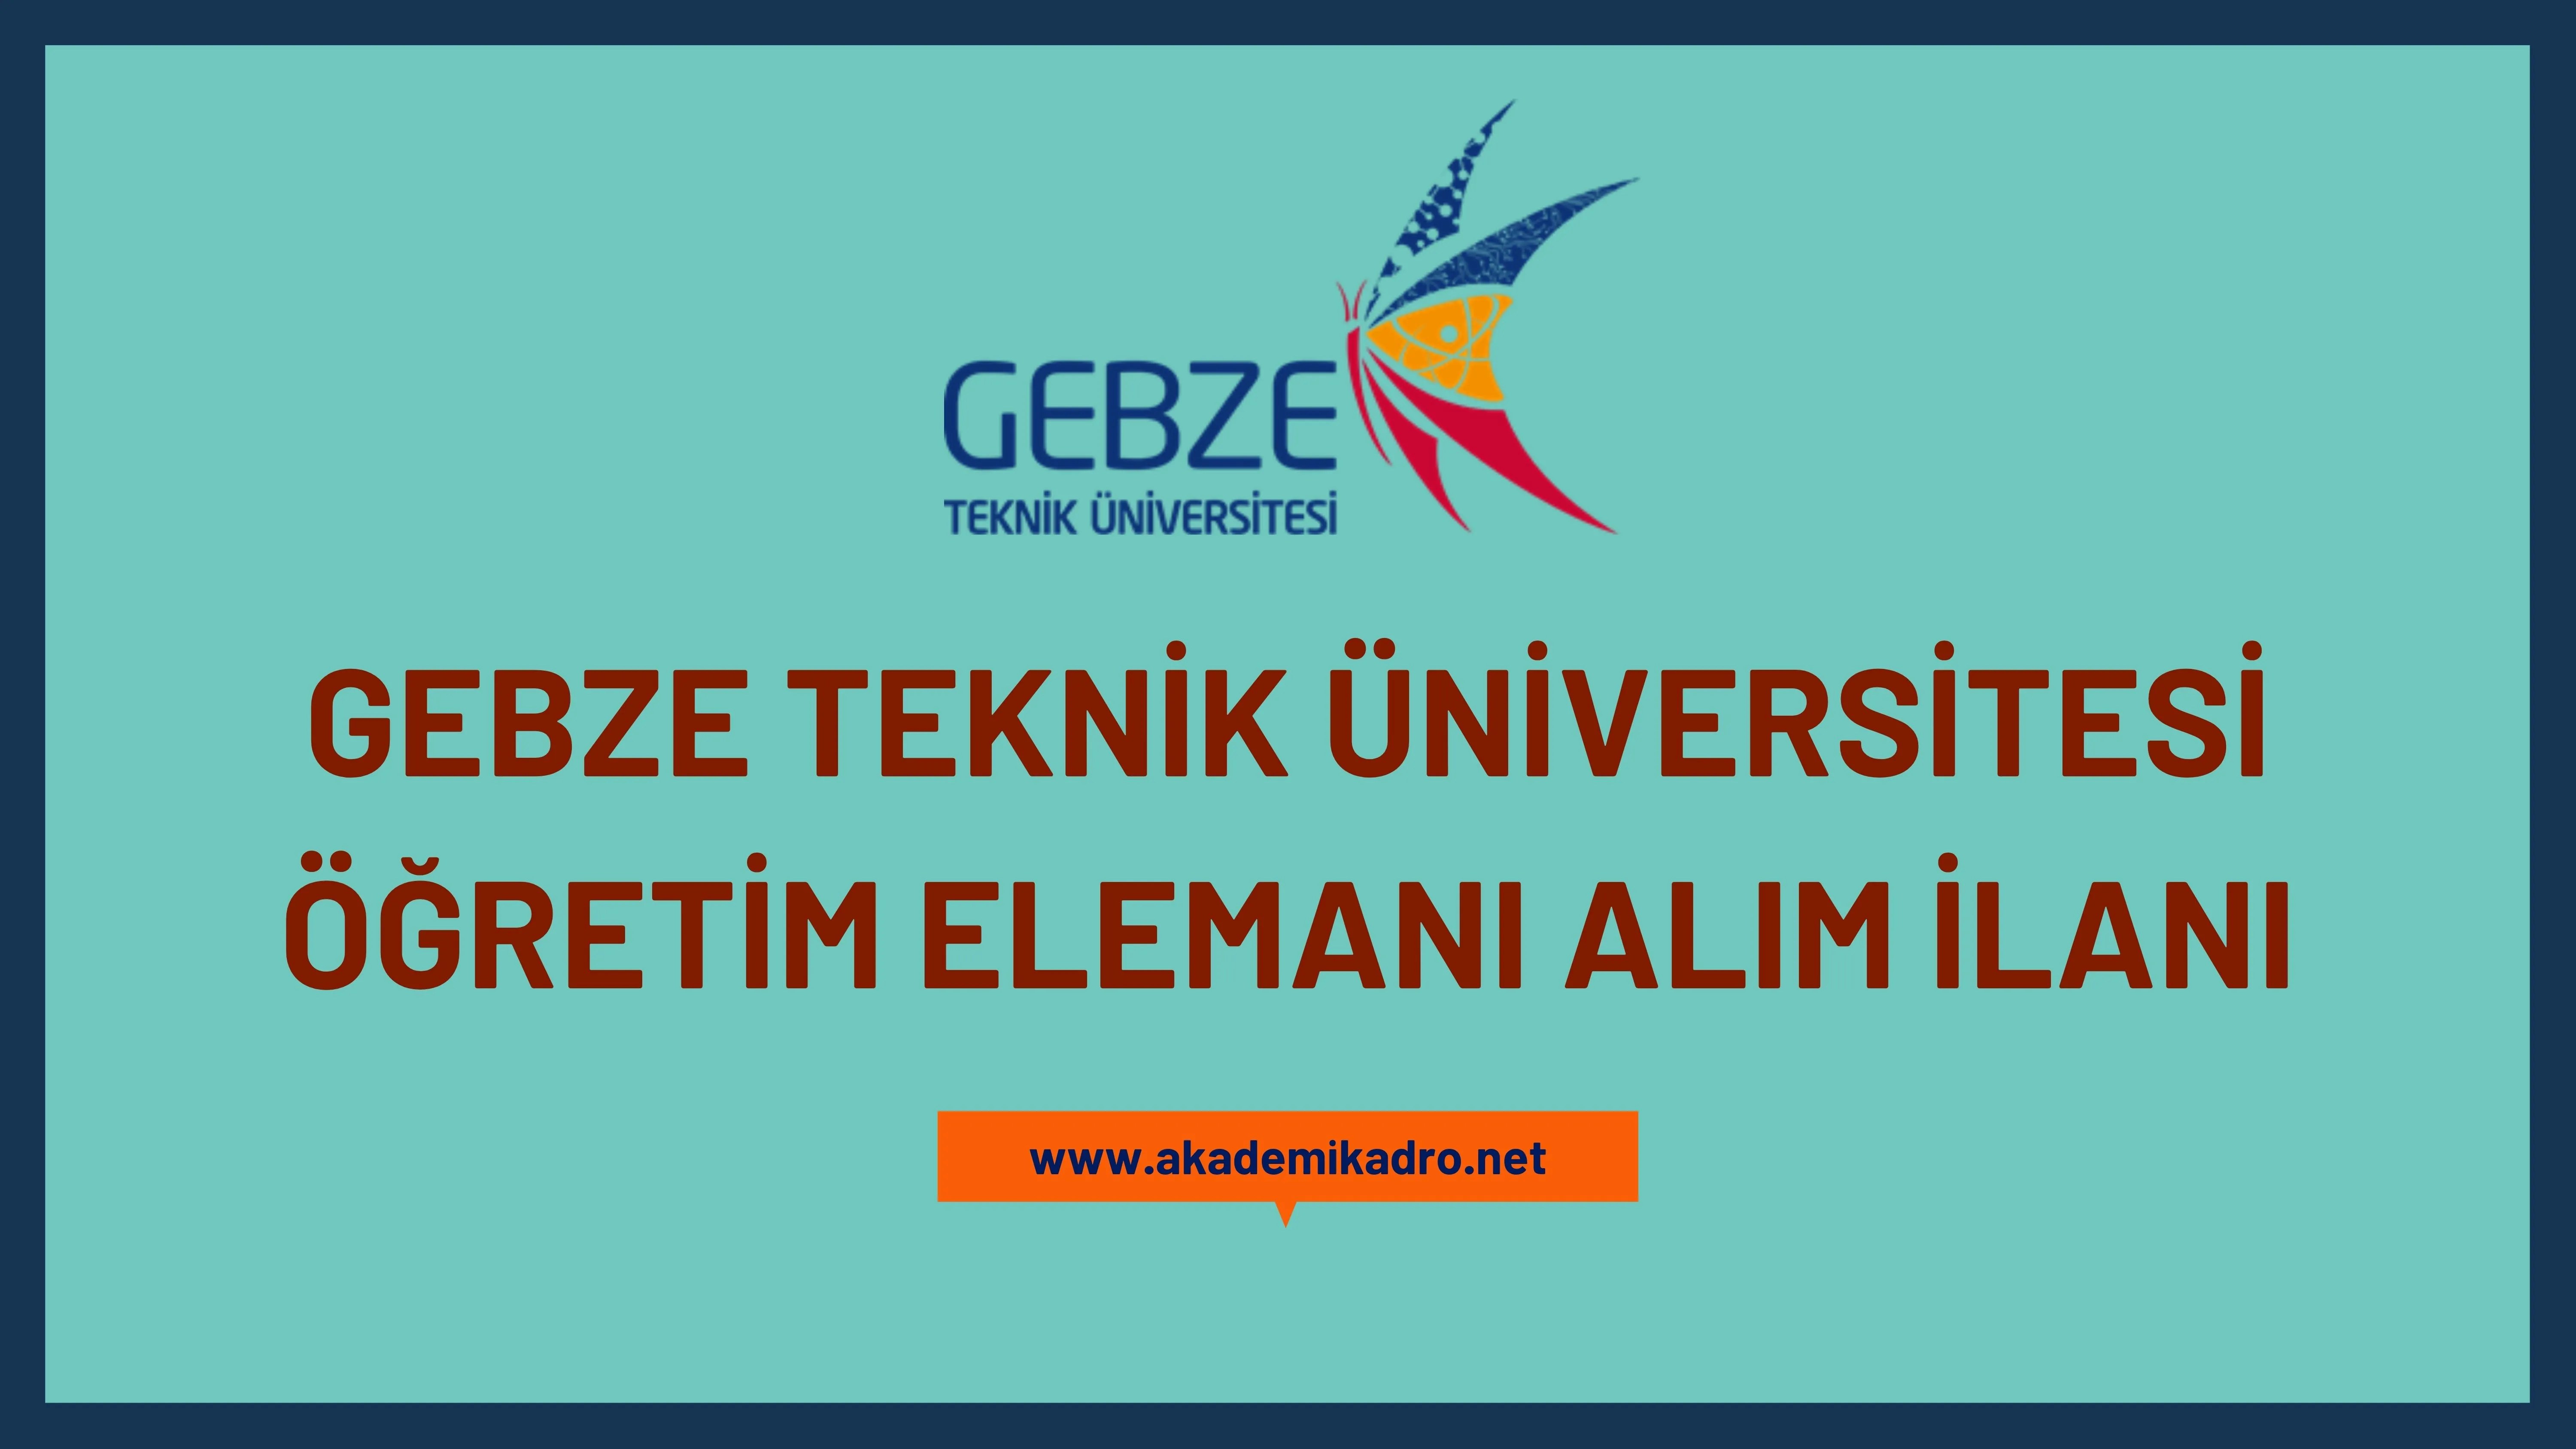 Gebze Teknik Üniversitesi 2 Araştırma görevlisi, 2 Öğretim görevlisi ve 8 Öğretim üyesi alacak. Son başvuru tarihi 20 Haziran 2023.